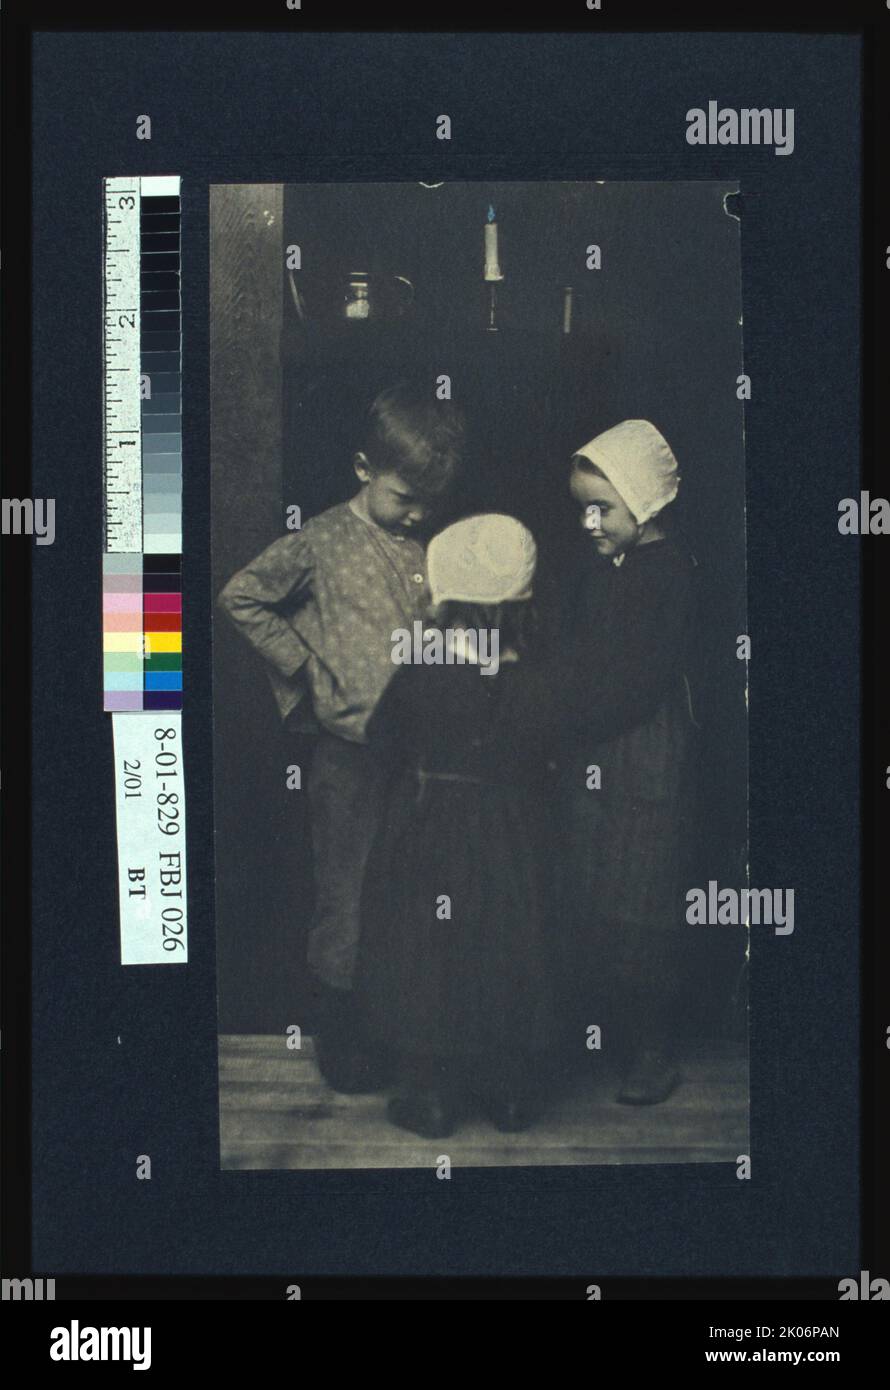 Nous allons avoir des pommes de terre chaudes!, C1900. La photo montre un jeune garçon et deux jeunes filles, vêtues à l'époque coloniale(?) vêtements, debout ensemble. La photographie était une illustration de l'histoire "les bougies" dans le livre de Brownell, "Dream Children". Banque D'Images